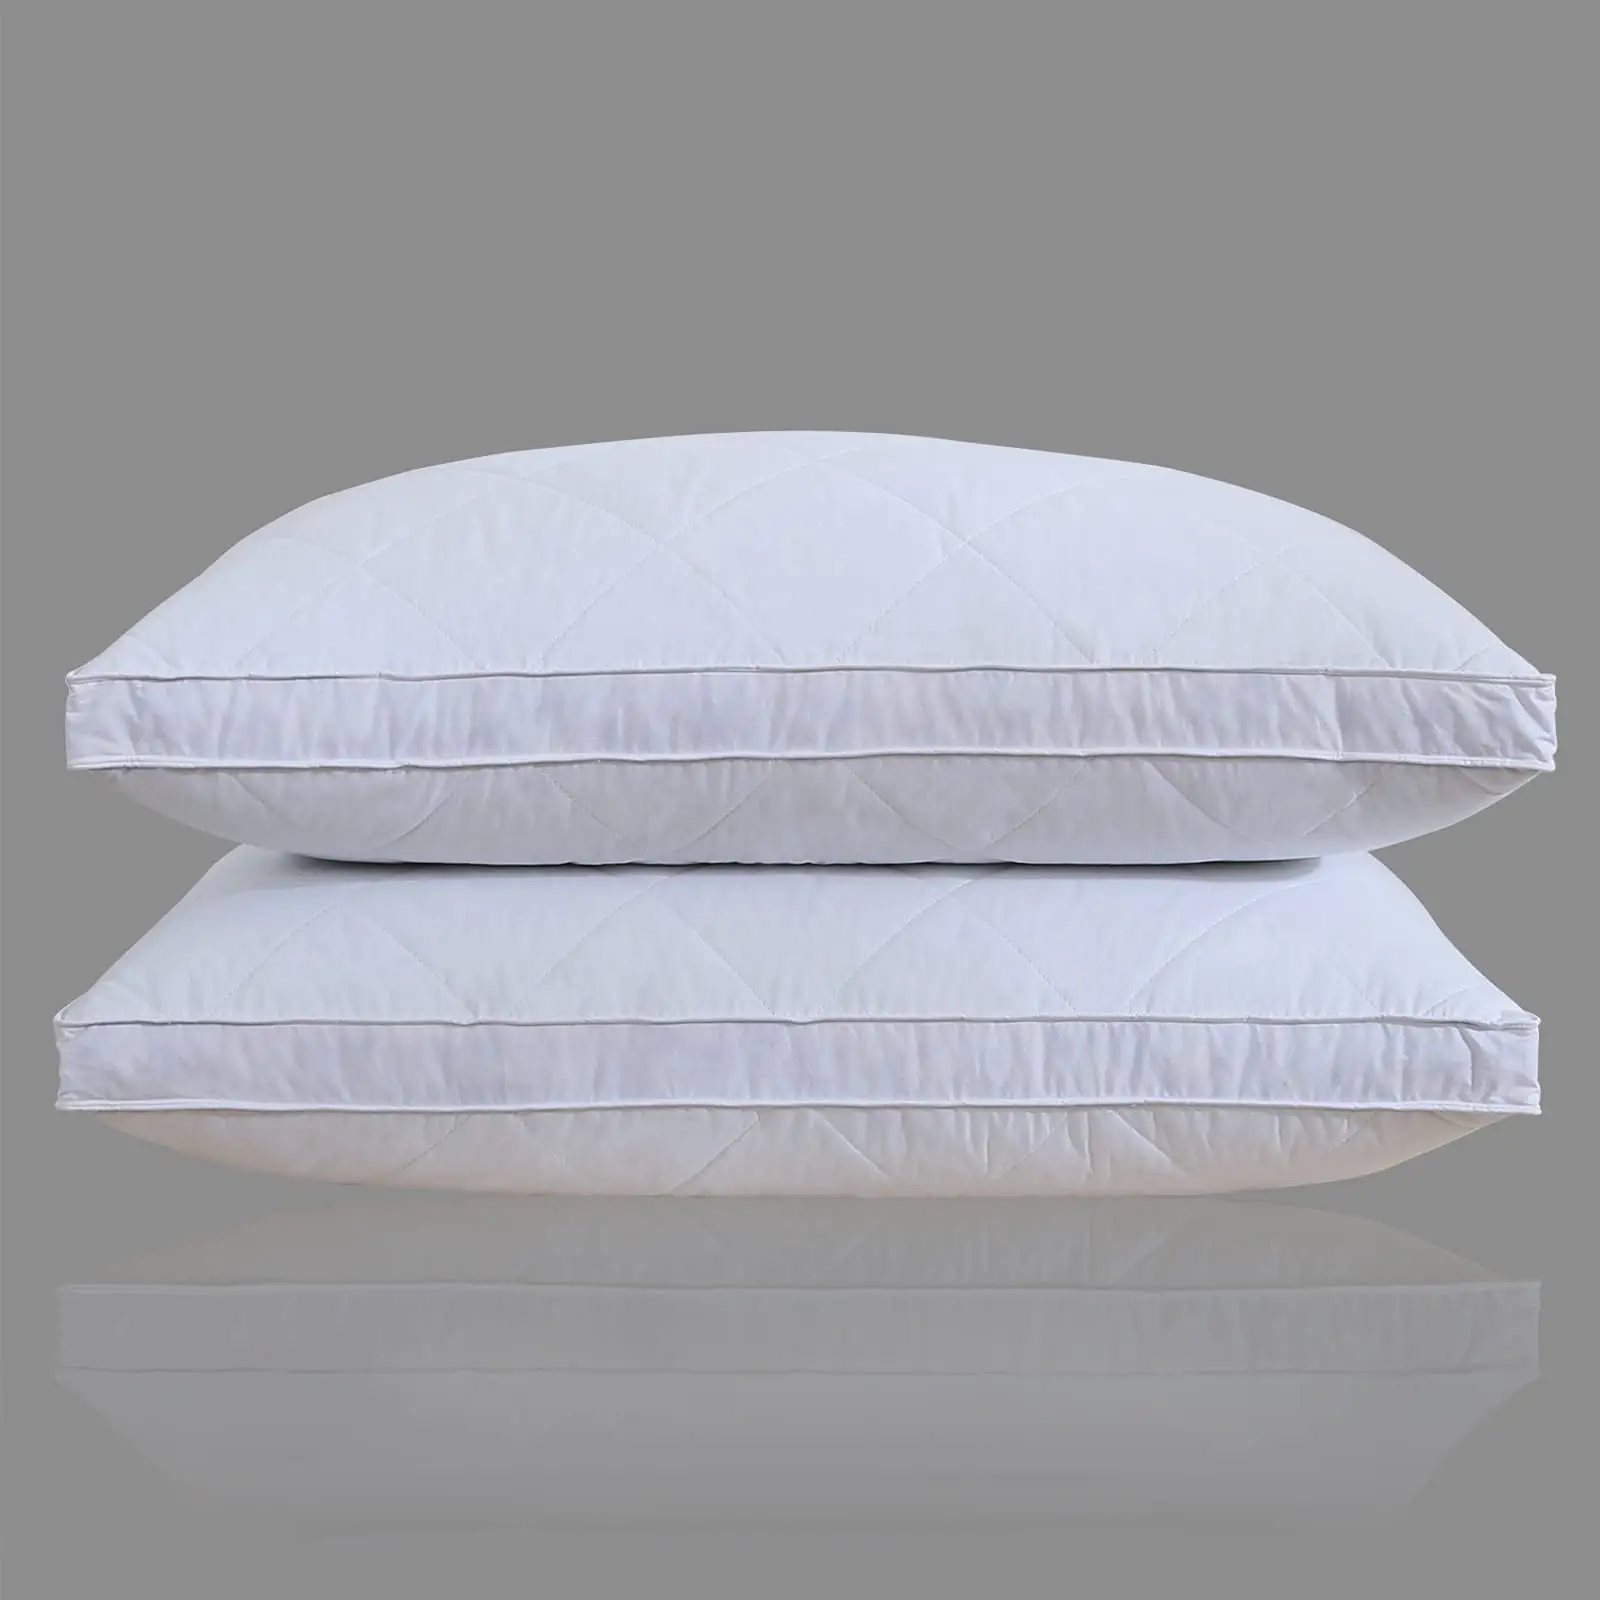 ريش الإوز الأبيض مع وسادة السرير القطنية بنسبة 100%, وسائد متوسطة وثابتة للبيع